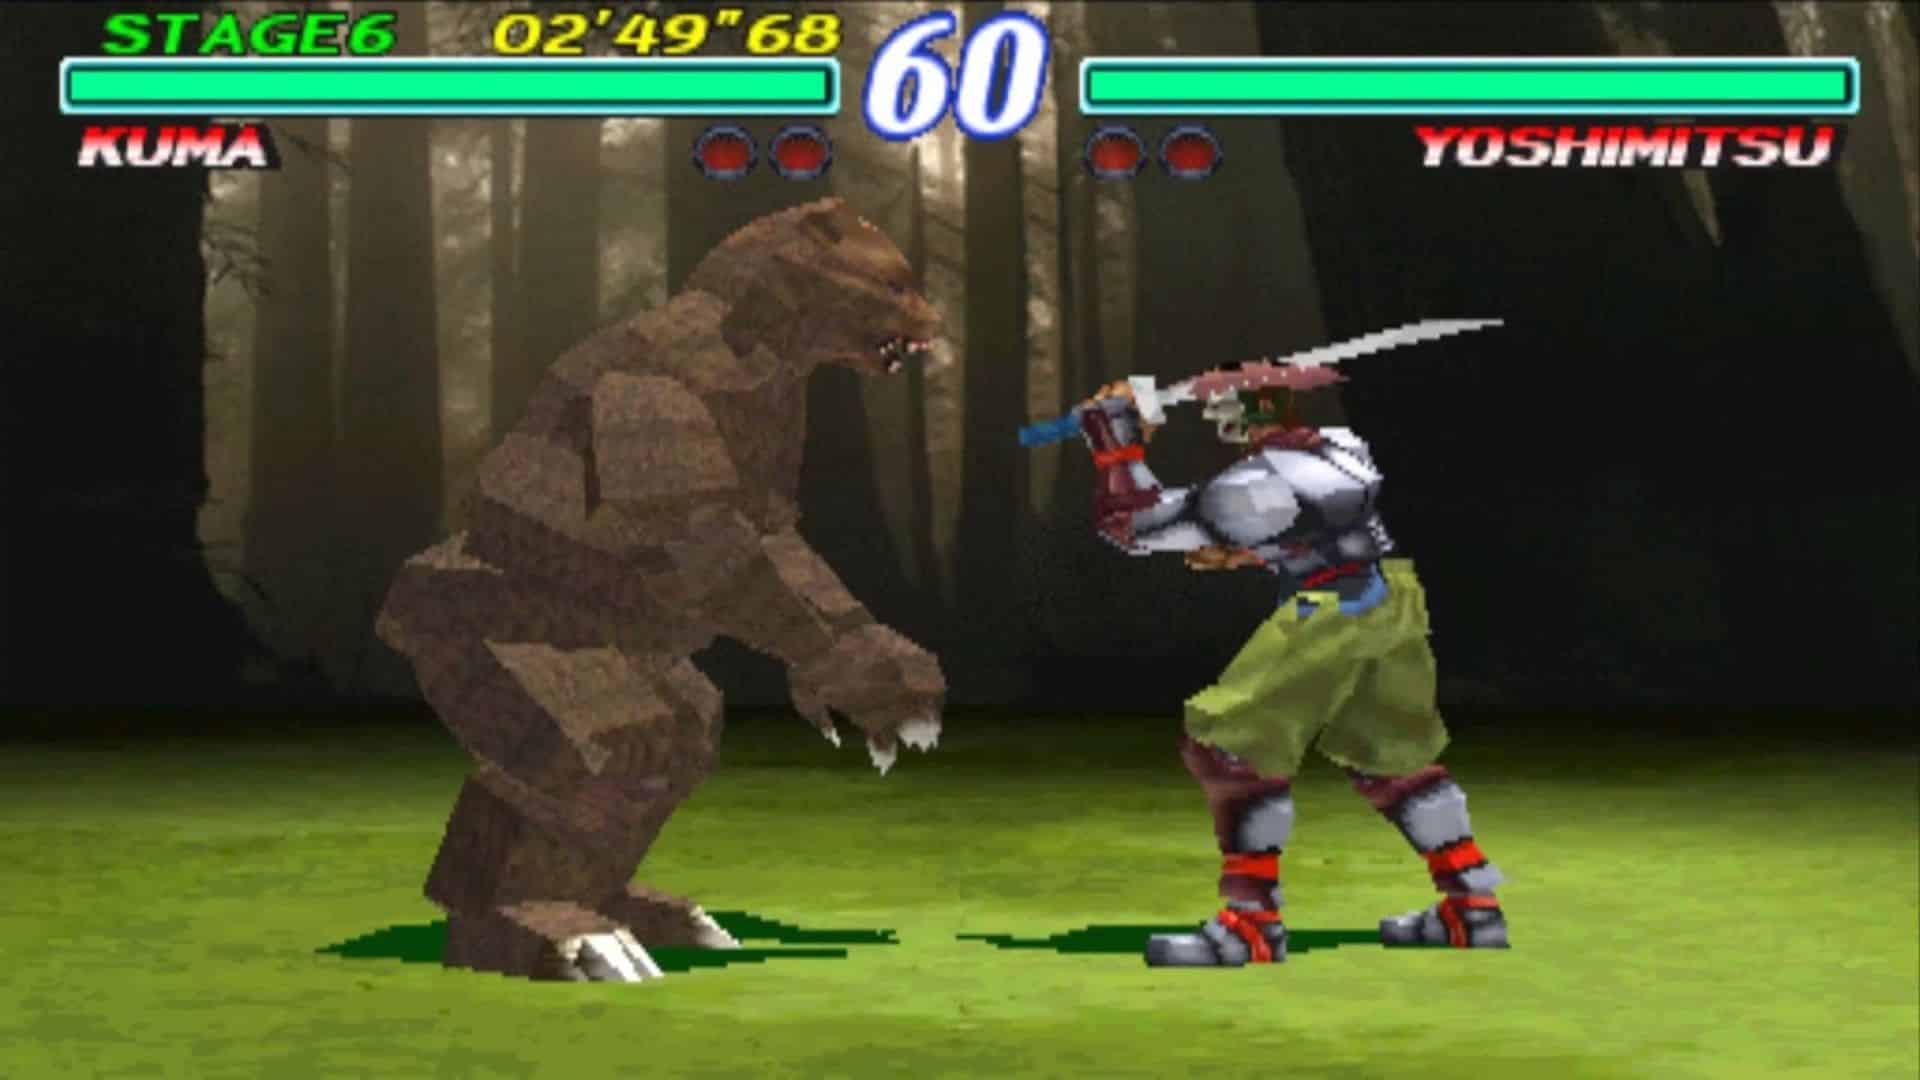 kuma fighting yoshimitsu in tekken 2